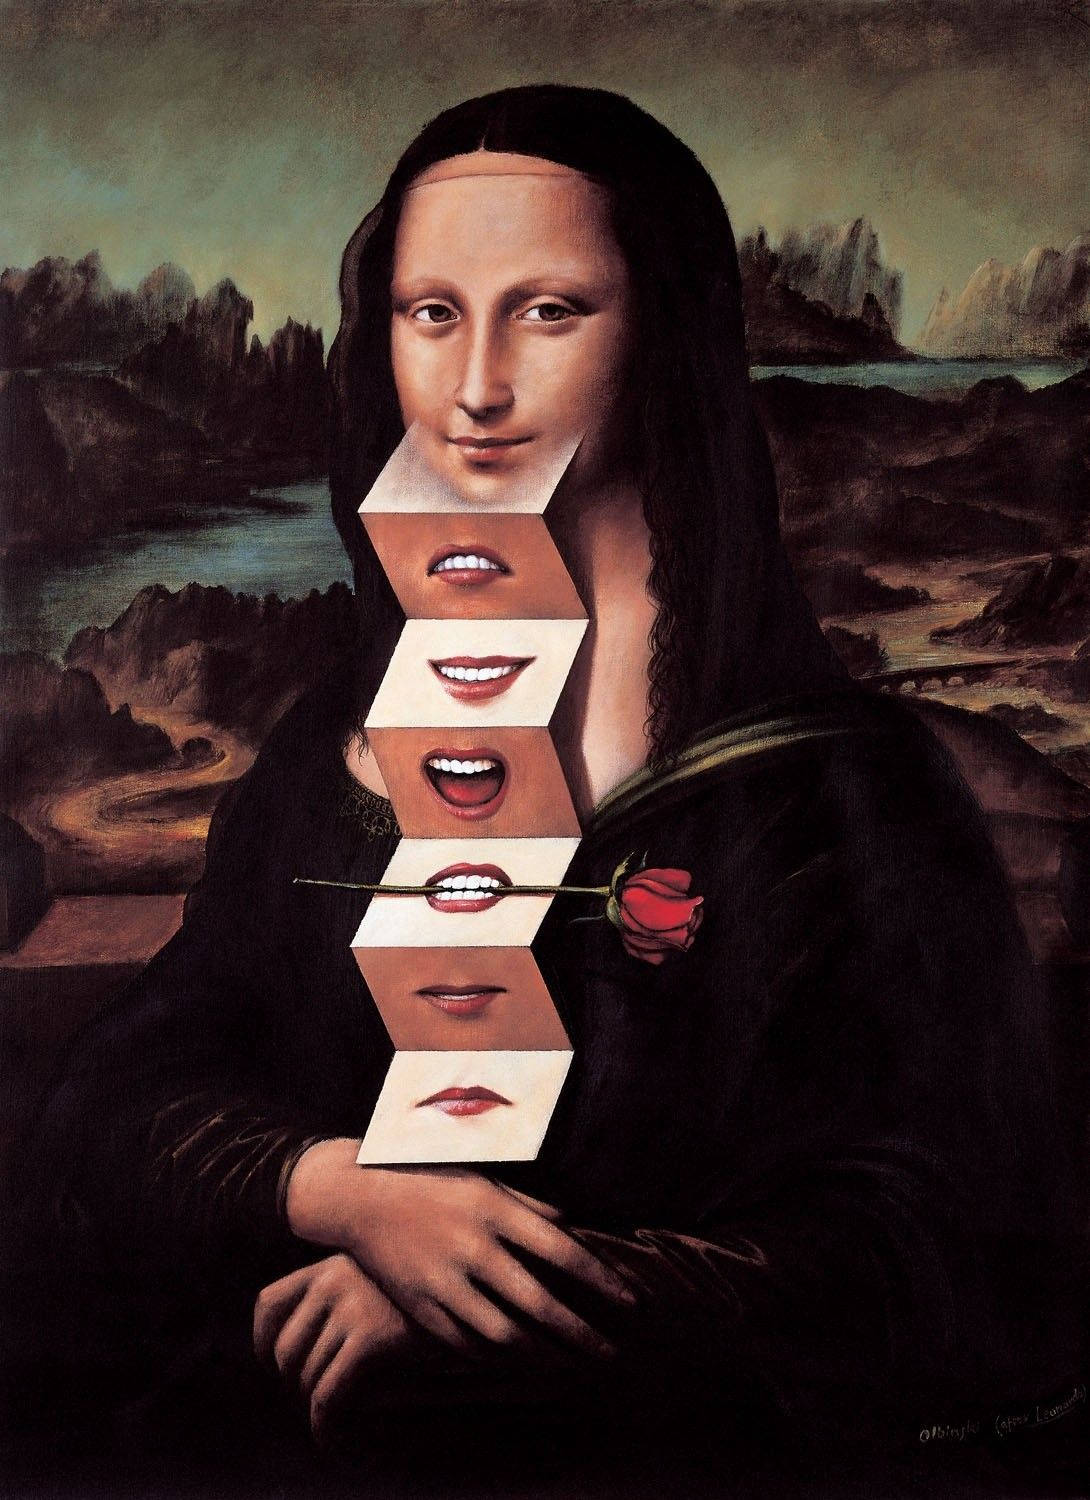 Mona Lisa-persona. Wallpaper